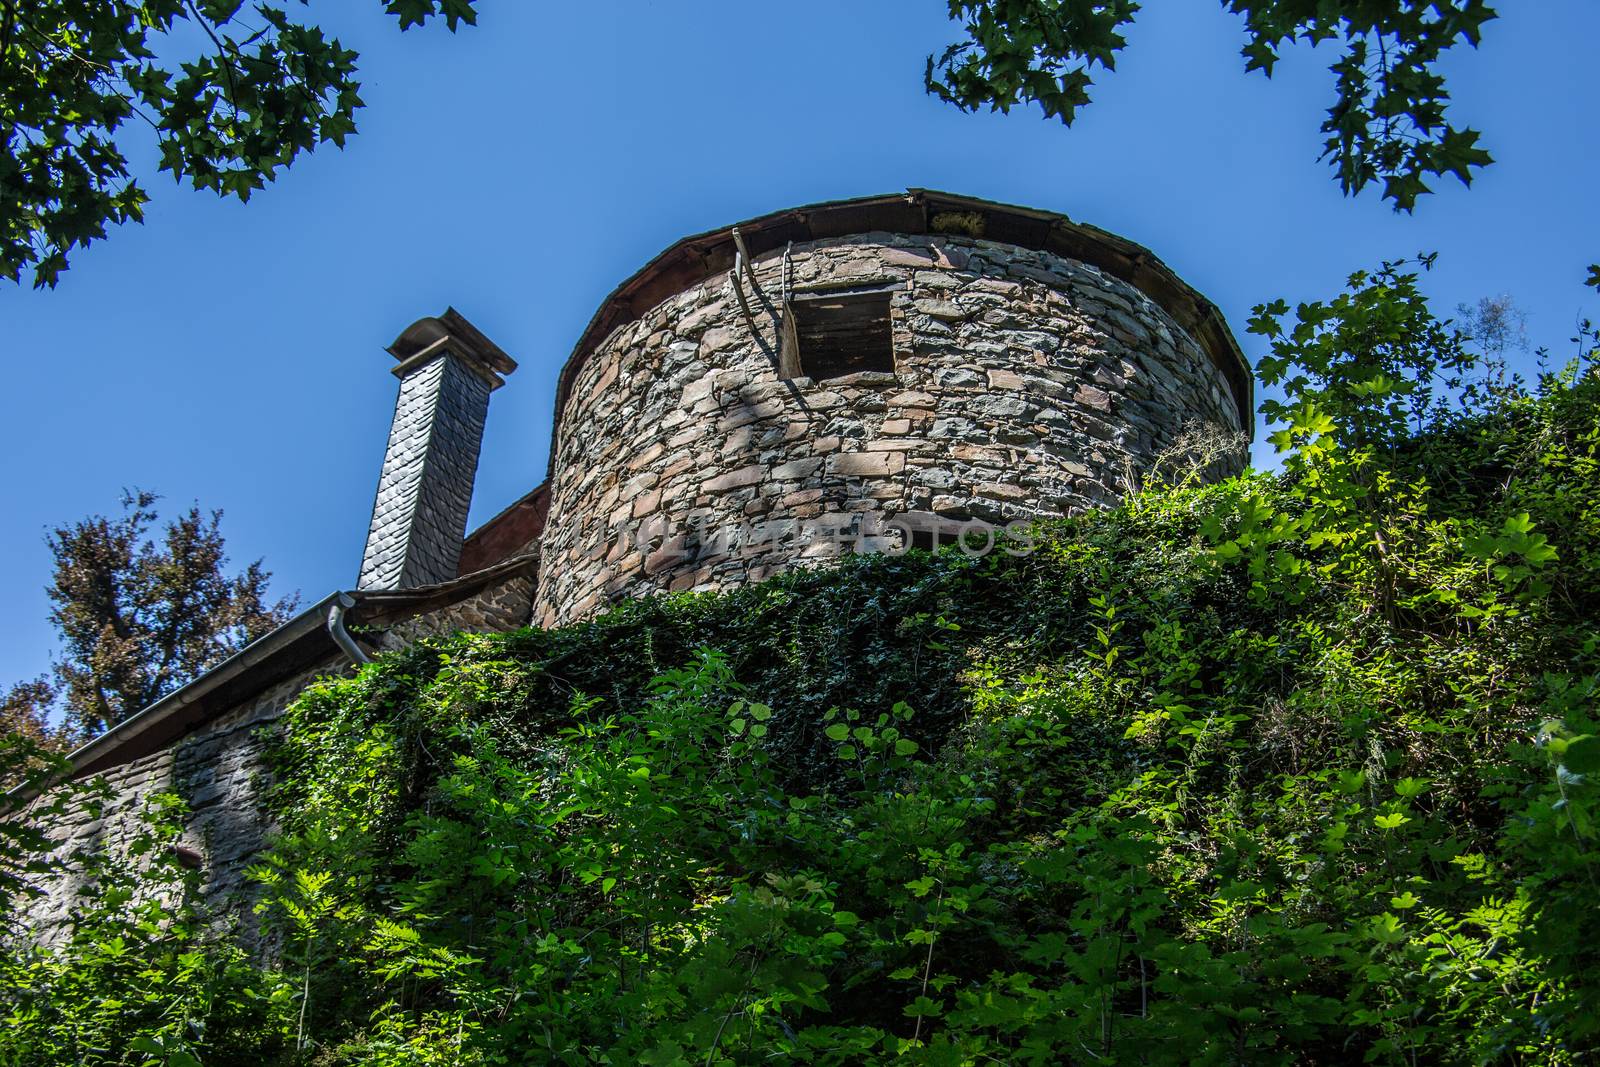 Schönstein Castle in Wissen